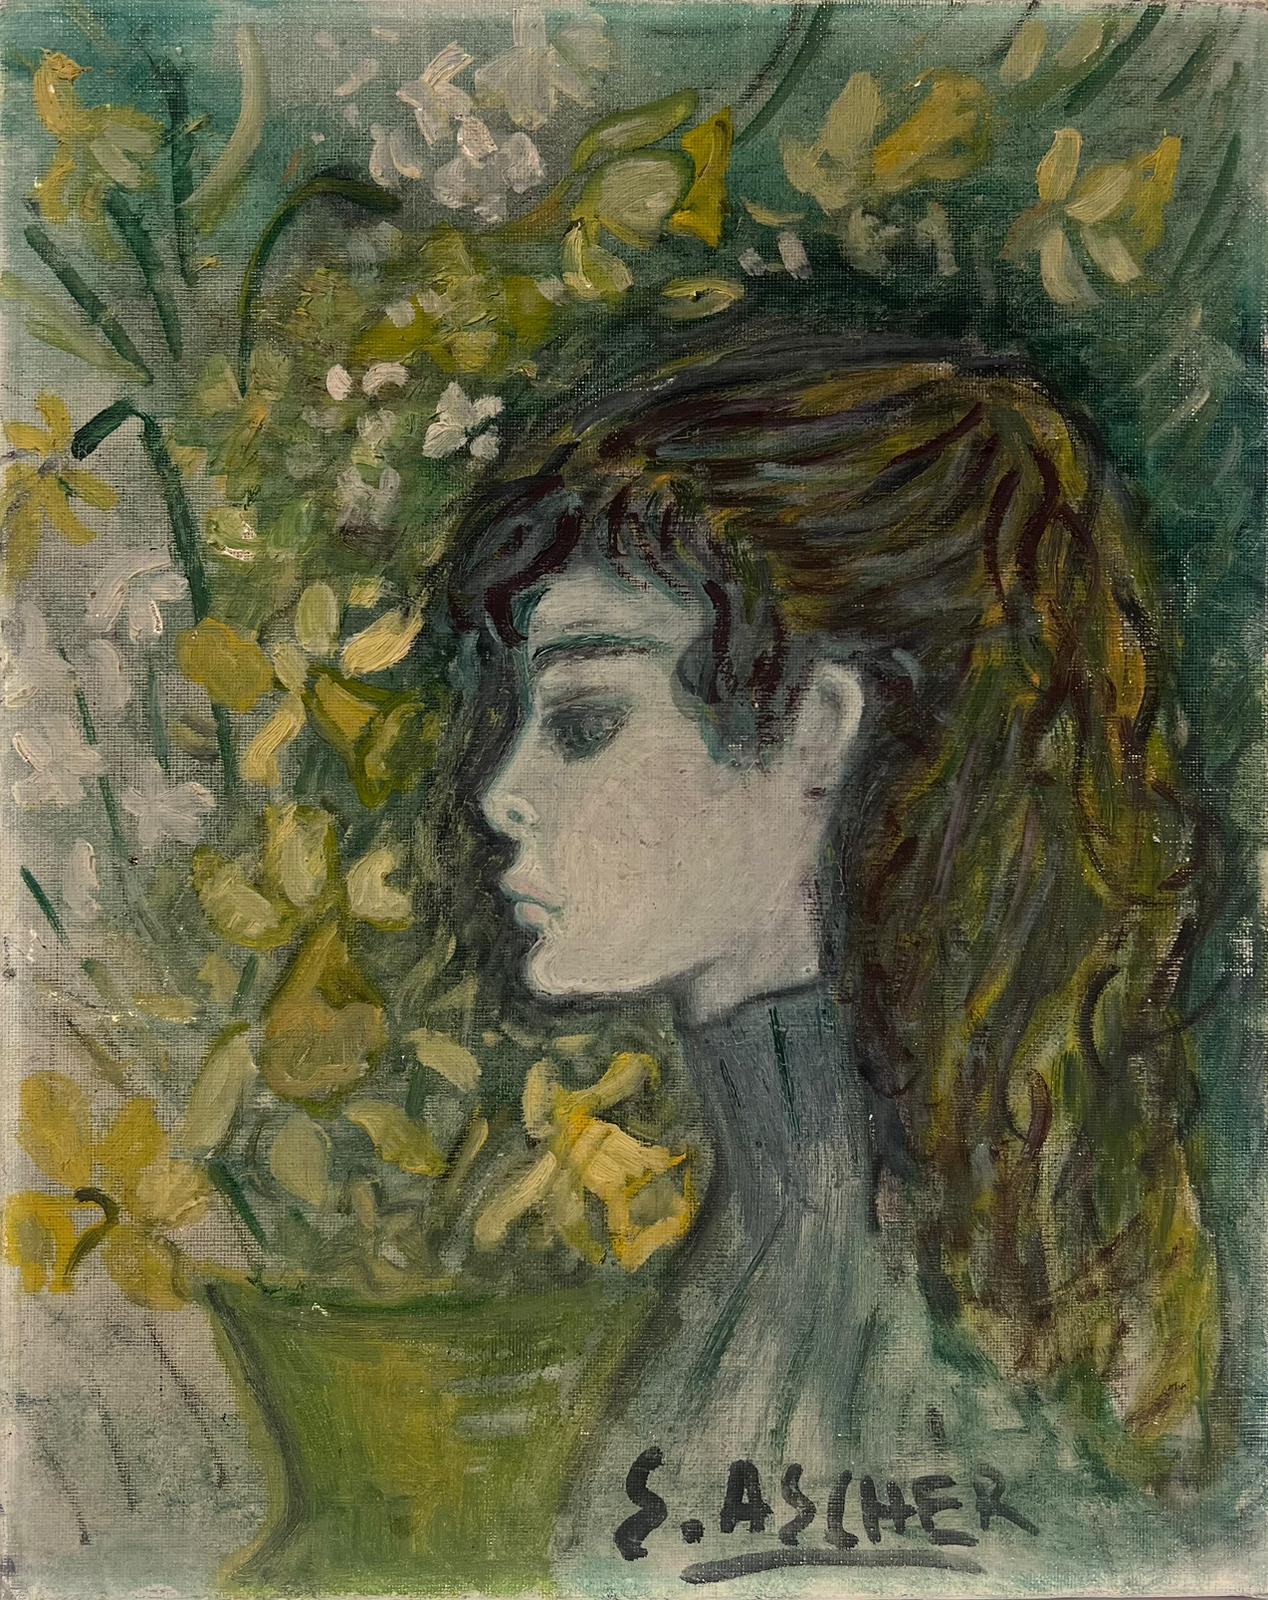 S.Ascher Figurative Painting – Mitte des 20. Jahrhunderts Französisch Modernist Porträt einer jungen Dame Grün & Gelb Farben